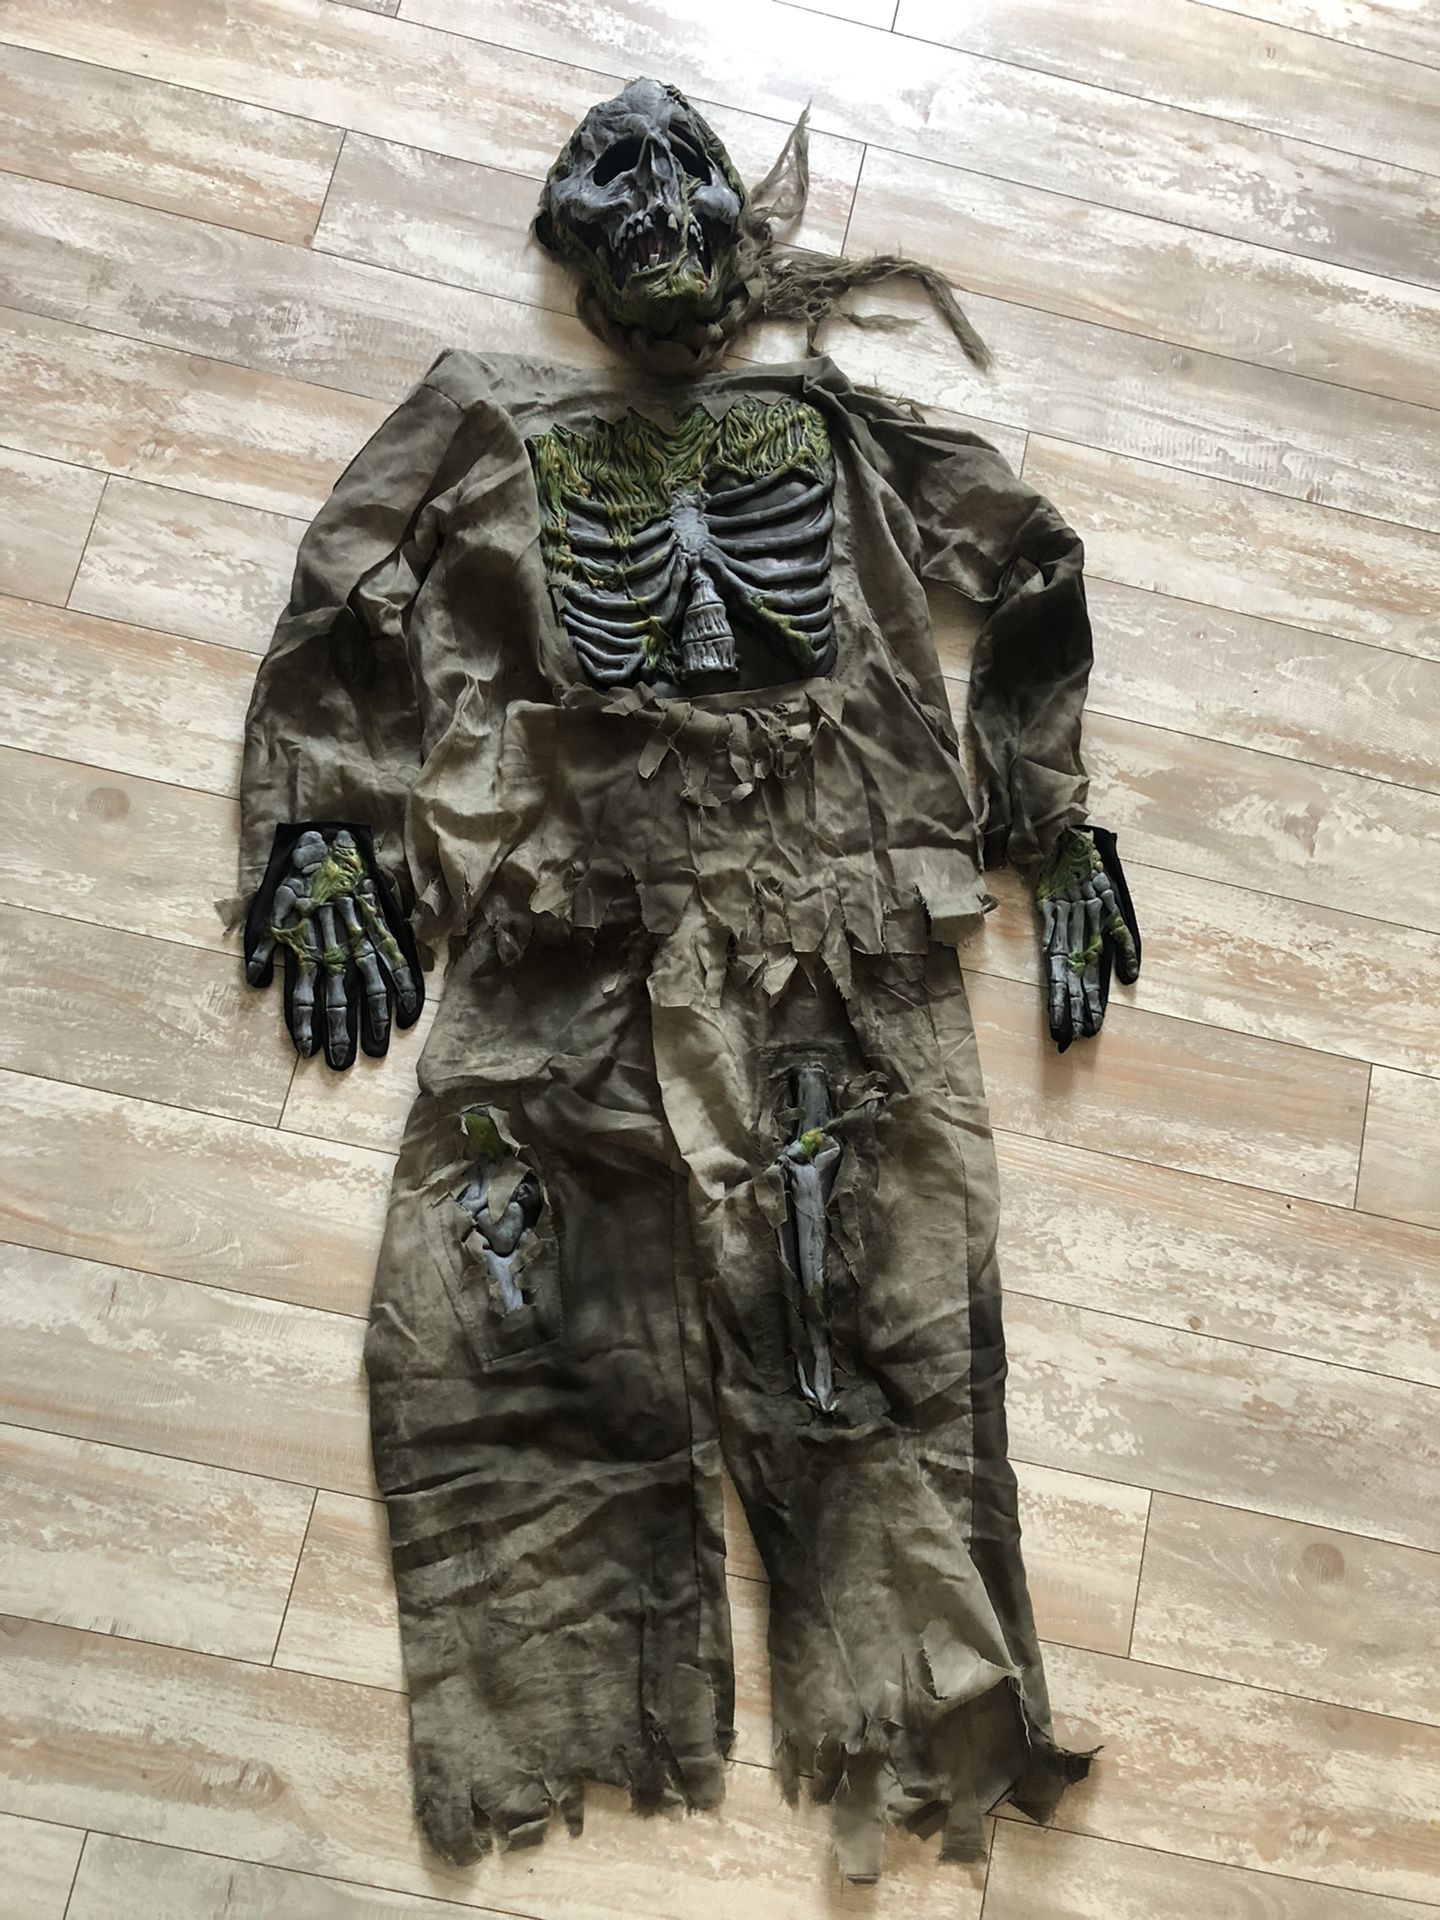 Zombie Skeleton Costume 